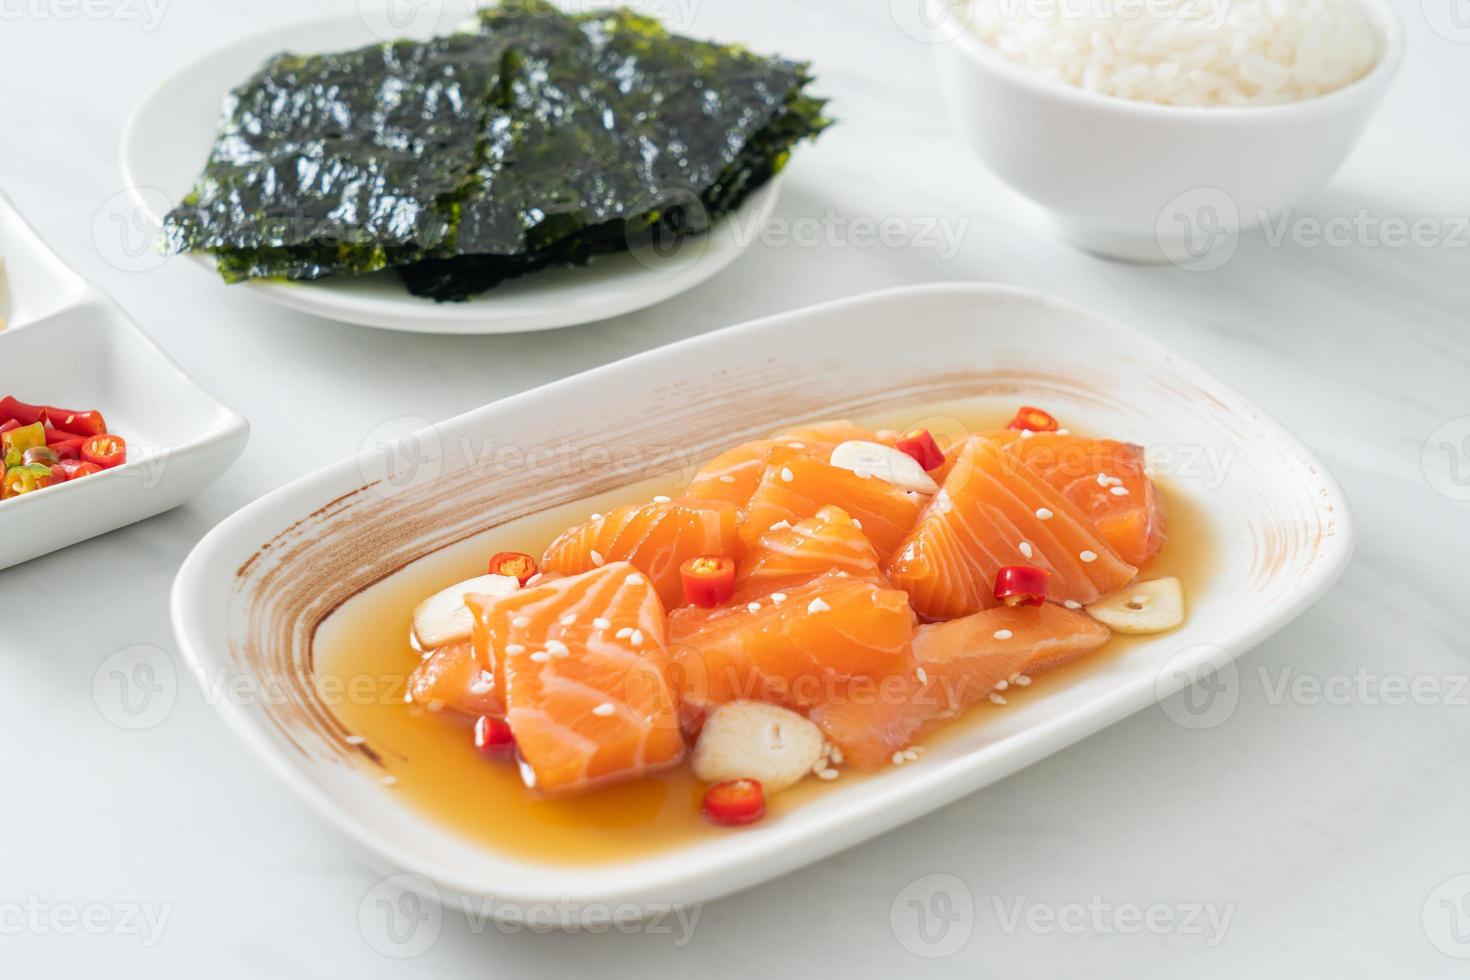 färsk lax råmarinerad shoyu eller laxinlagd sojasås - asiatisk matstil foto